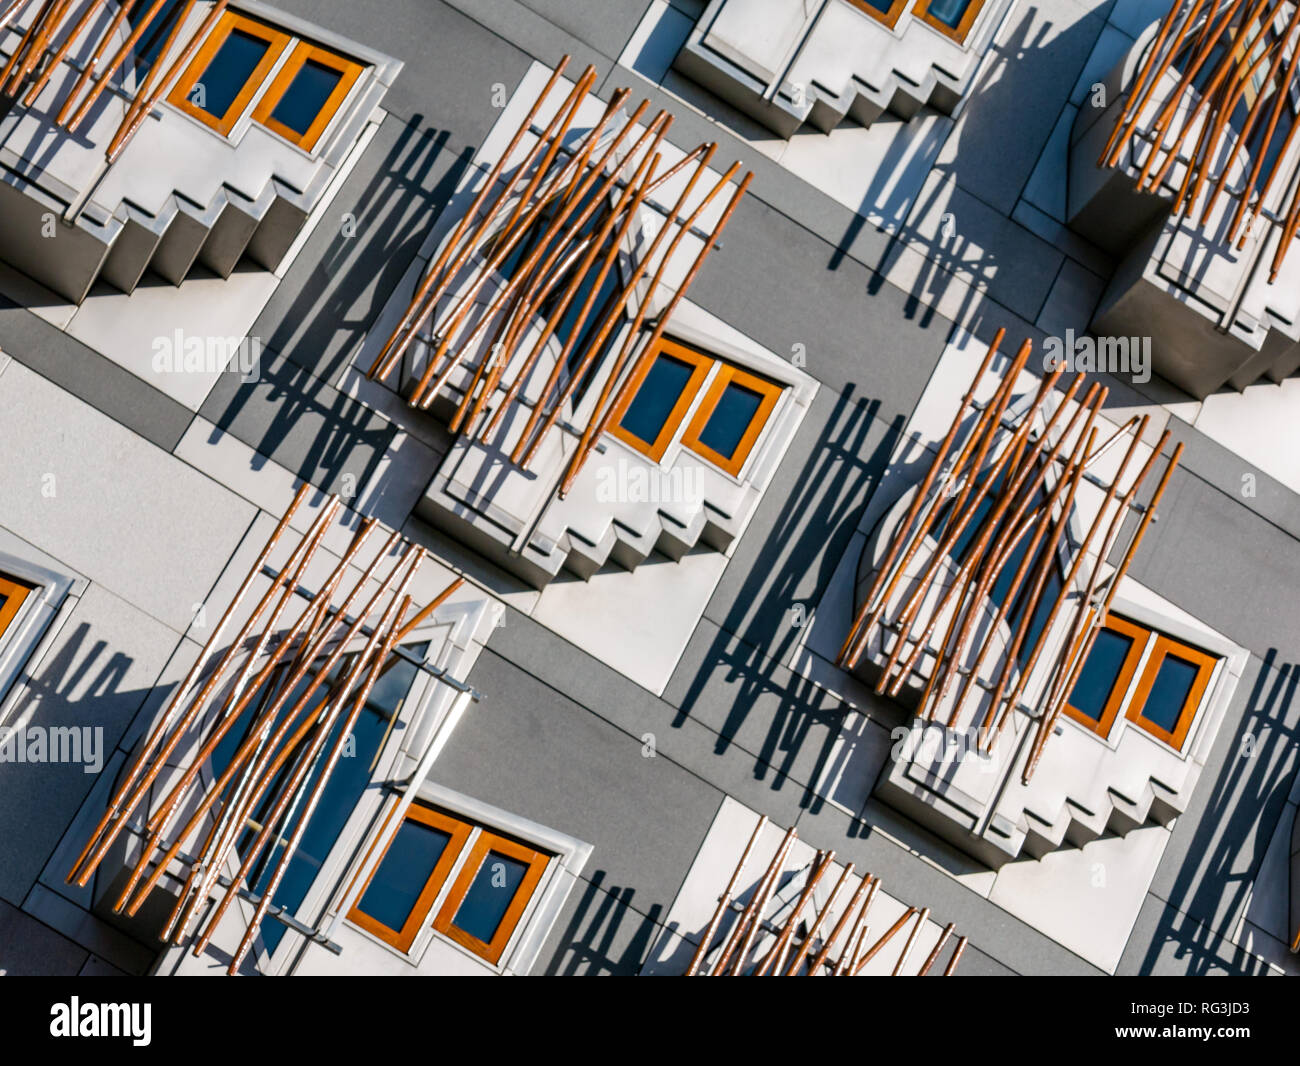 Schrullige Windows, denken Pods oder Kontemplation Räume, Schottisches Parlamentsgebäude von dem katalanischen Architekt Enric Miralles, Edinburgh, Schottland konzipiert Stockfoto